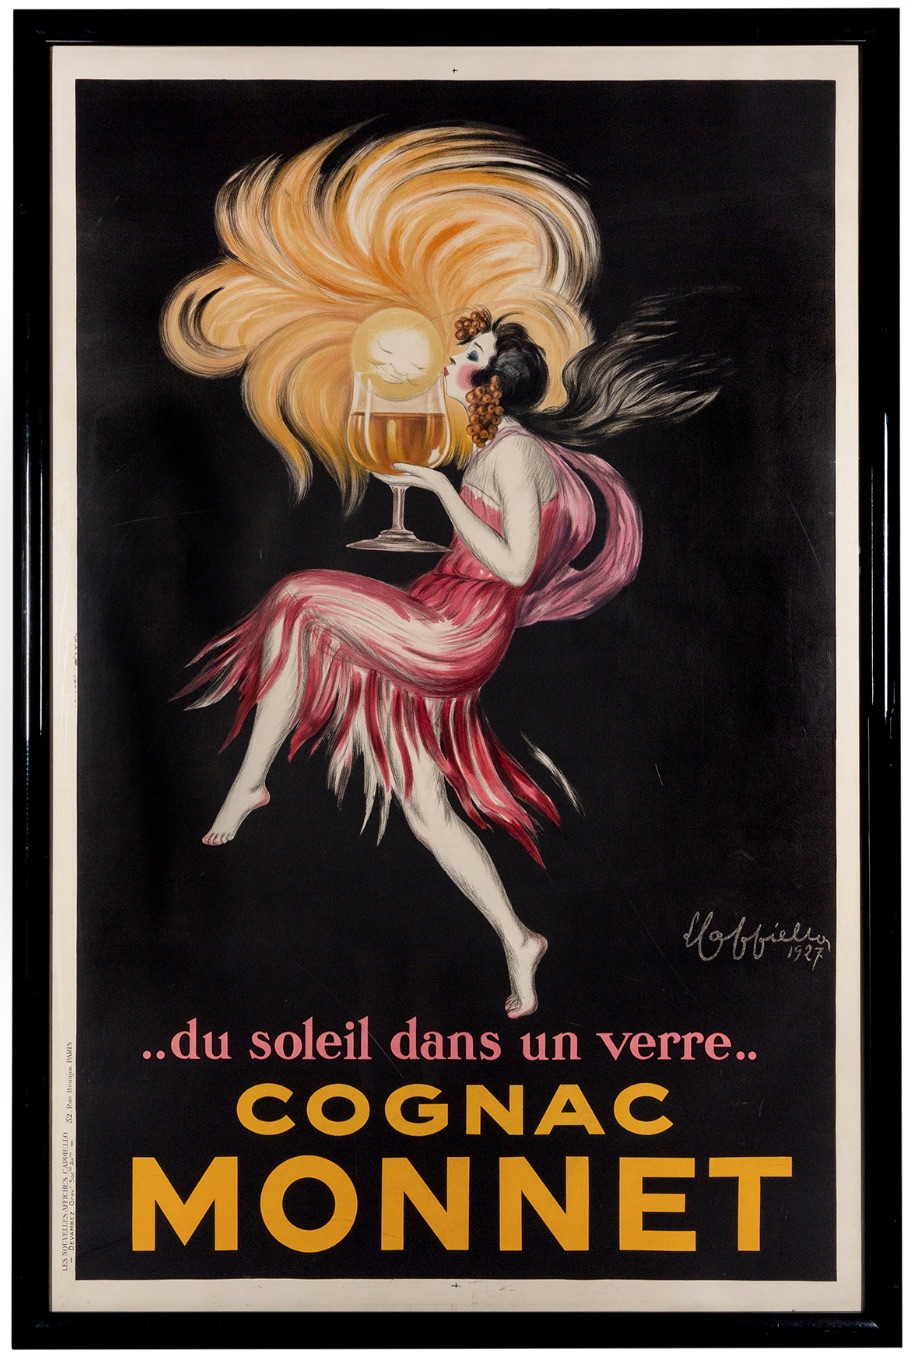 1927 Cognac Monnet poster by Leonetto Cappiello, est. $2,500-$3,500